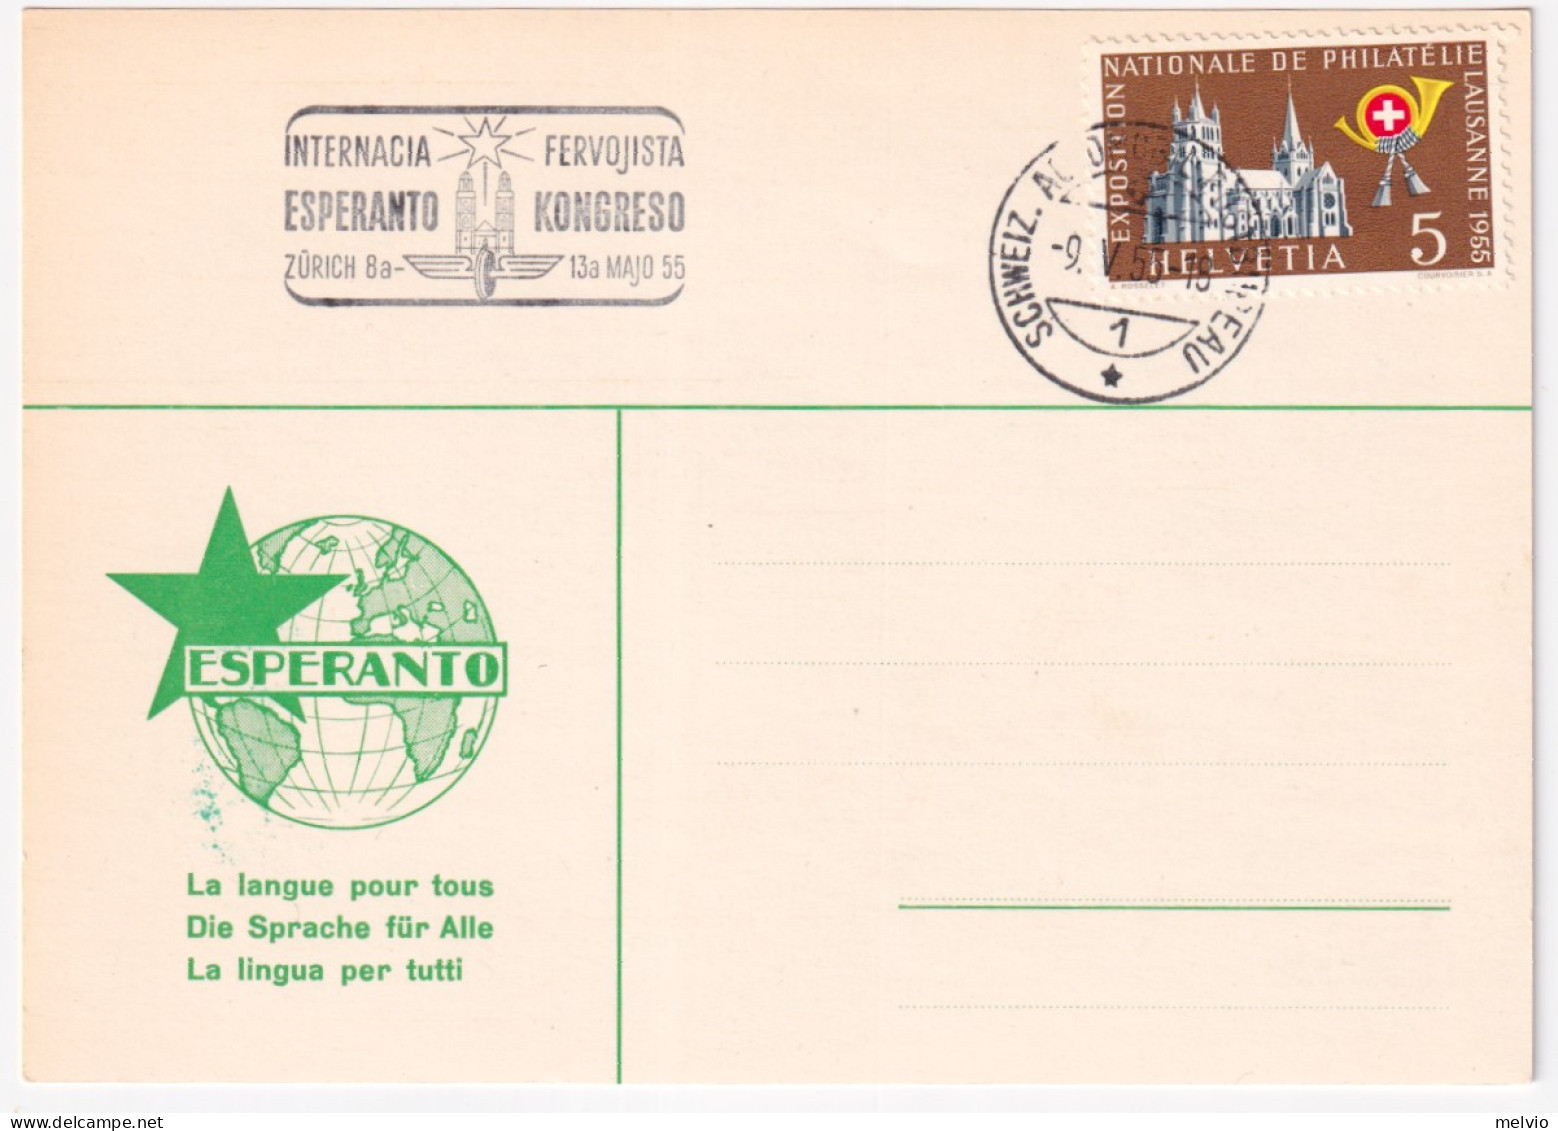 1955-Svizzera Congresso Internazionale Esperanto Zurigo (9.5) annullo speciale s